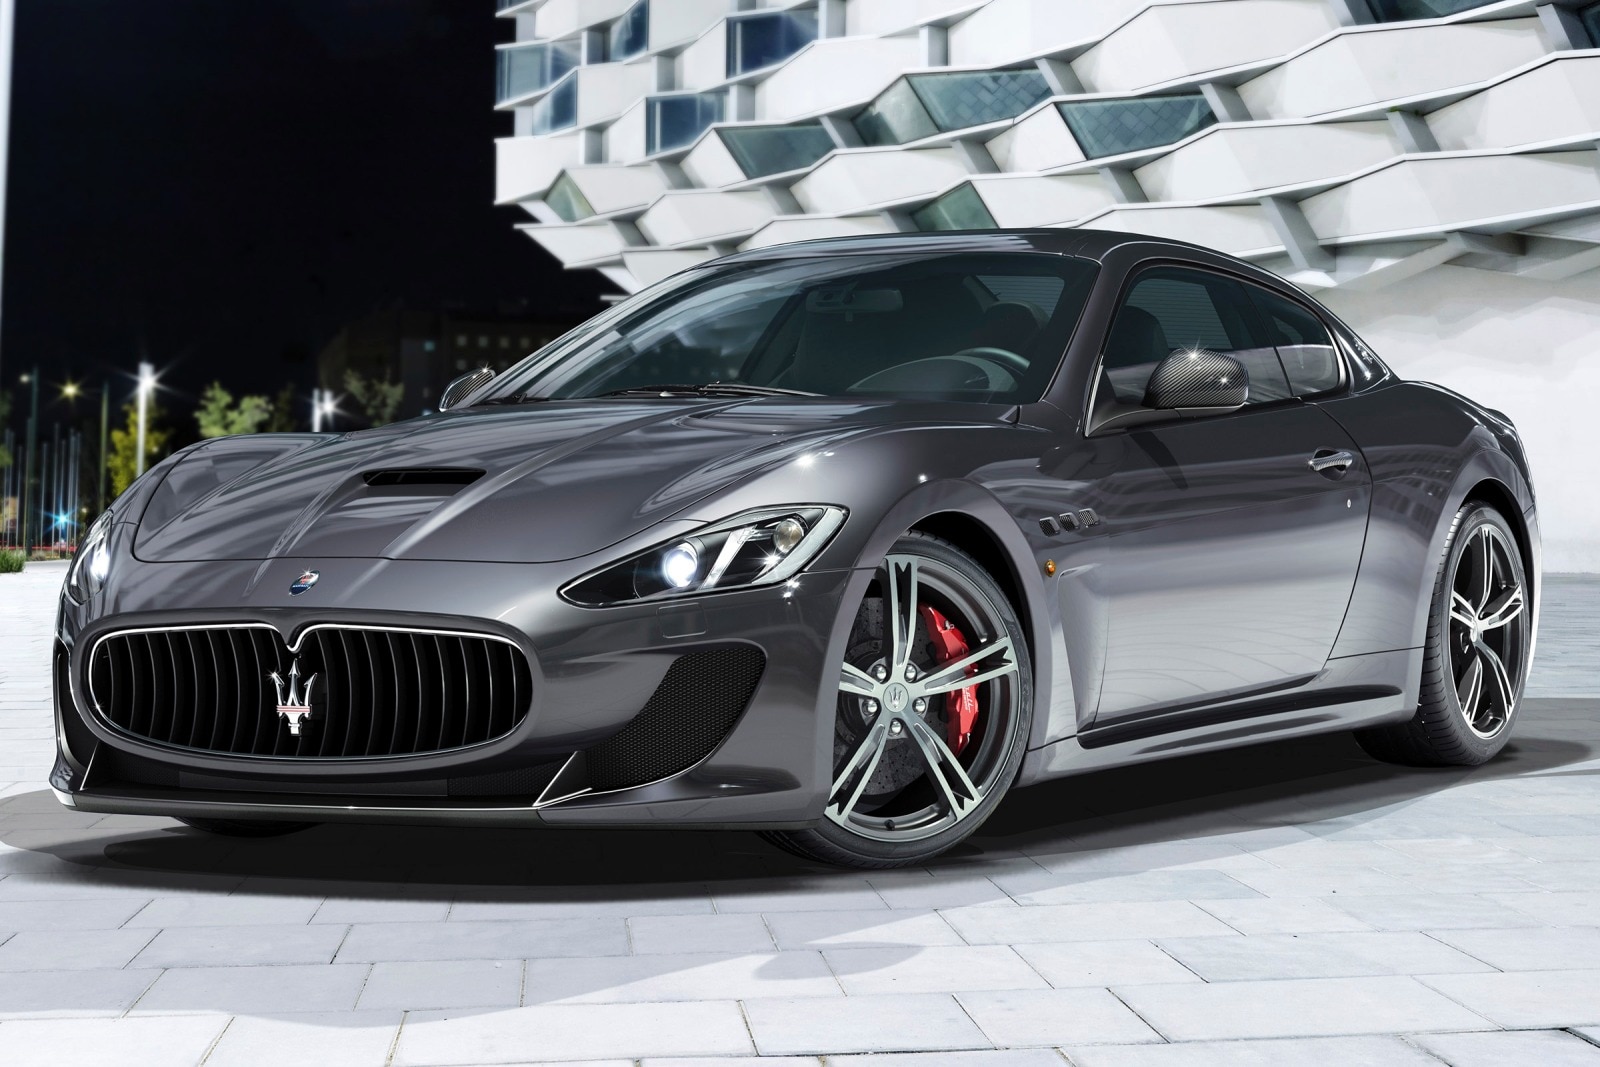 2013 Maserati GranTurismo Review & Ratings | Edmunds